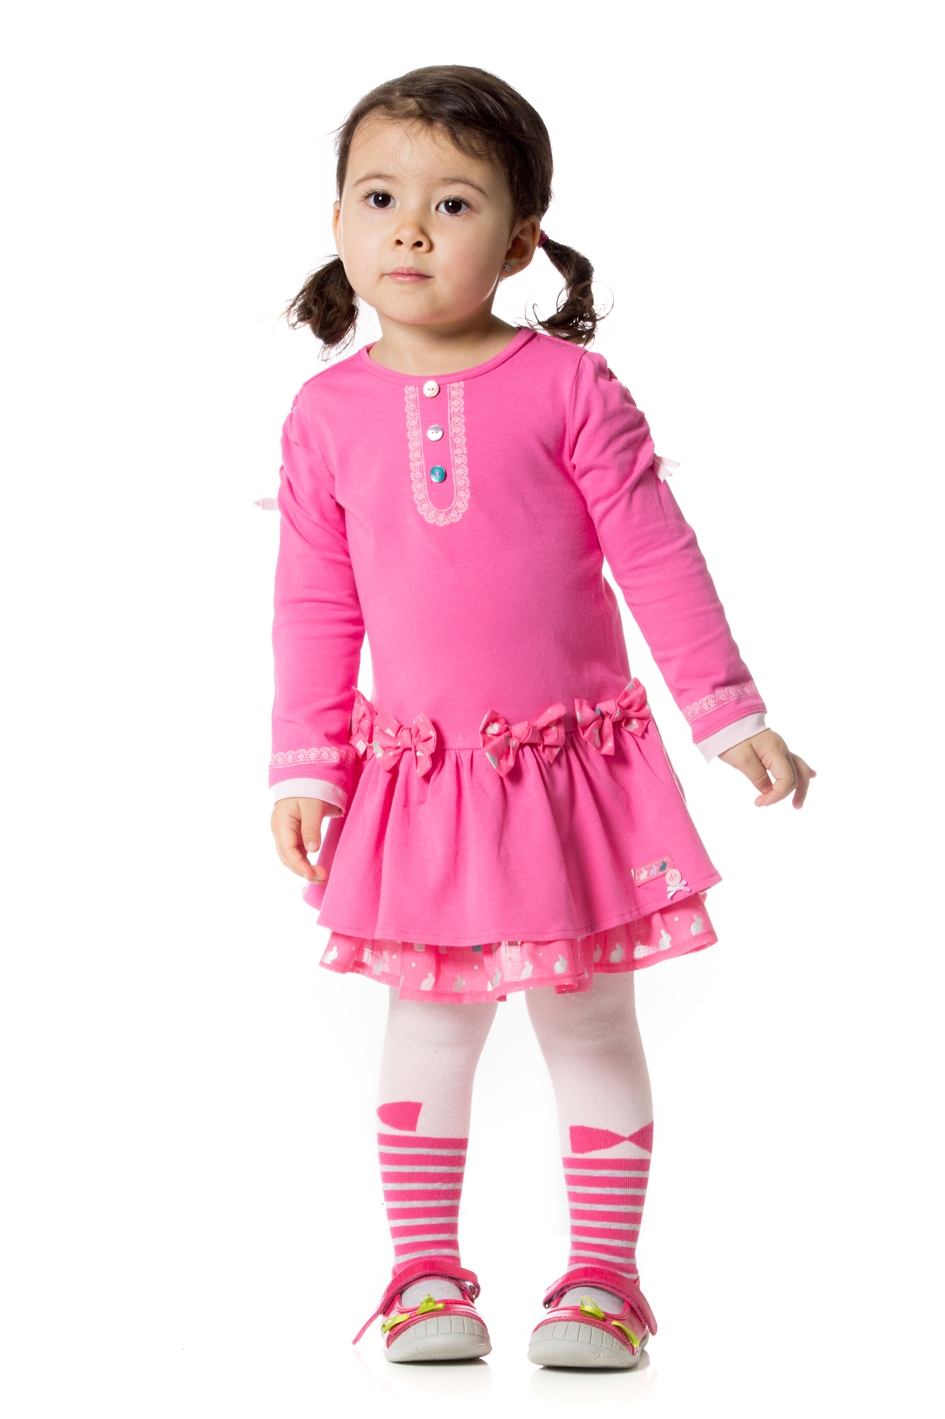 5175 2 ملابس اطفال للبيع - تريدي ملابس لطفلك اليك اجمل ملابس الاطفال تحفة العراق